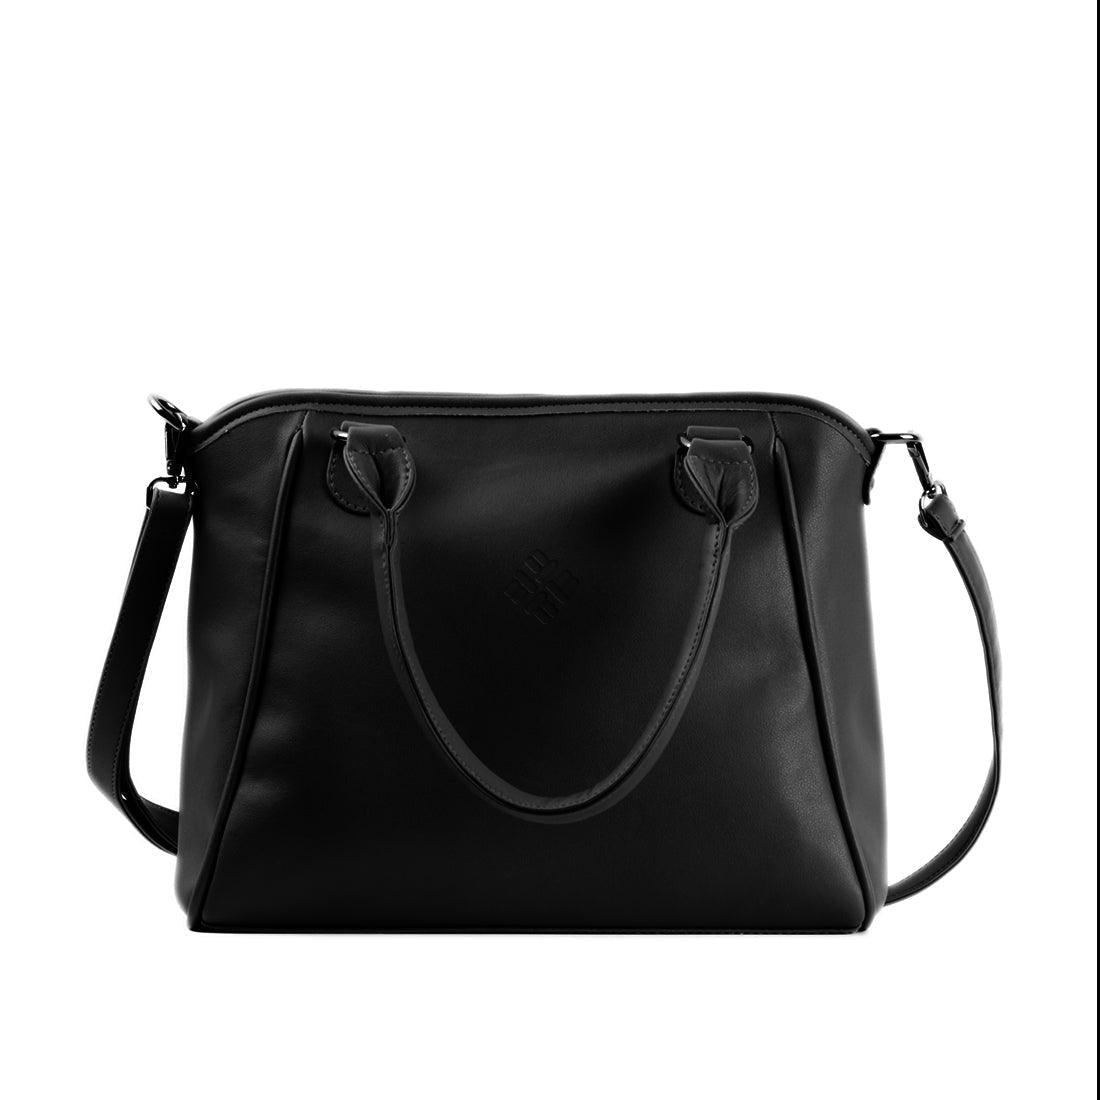 Black Ladies Handbag Texture - CANVAEGYPT